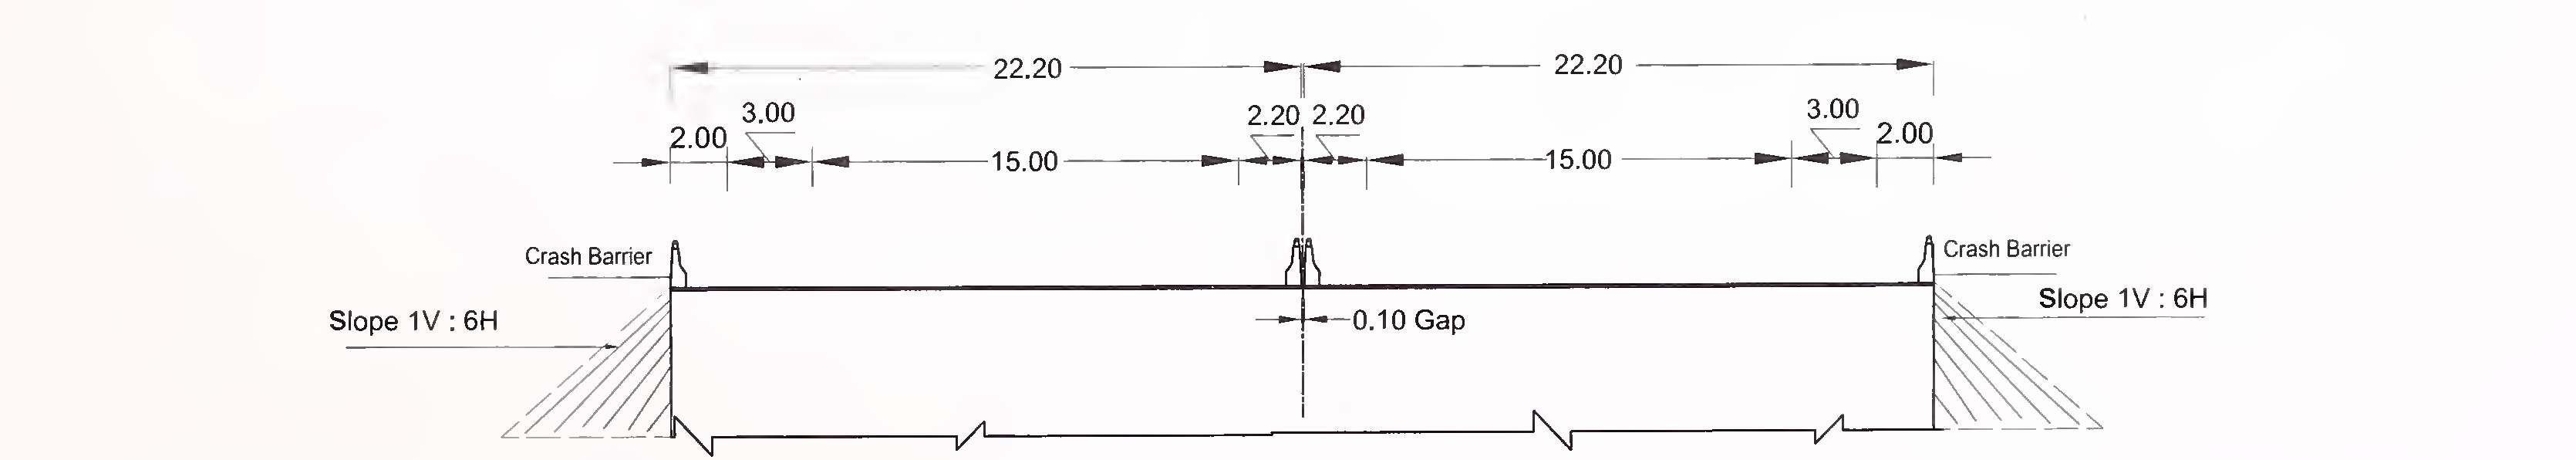 ಚಿತ್ರ 6.4 (ಸಿ) 8-ಲೇನ್ (2 × 4) ಗಾಗಿ ಸ್ಲ್ಯಾಬ್ ಮತ್ತು ಬಾಕ್ಸ್ ಪ್ರಕಾರದ ಕಲ್ವರ್ಟ್‌ನ ವಿಶಿಷ್ಟ ಅಡ್ಡ-ವಿಭಾಗ ಫ್ಲಶ್ ಮೀಡಿಯನ್‌ನೊಂದಿಗೆ ಎಕ್ಸ್‌ಪ್ರೆಸ್ ಹೆದ್ದಾರಿ